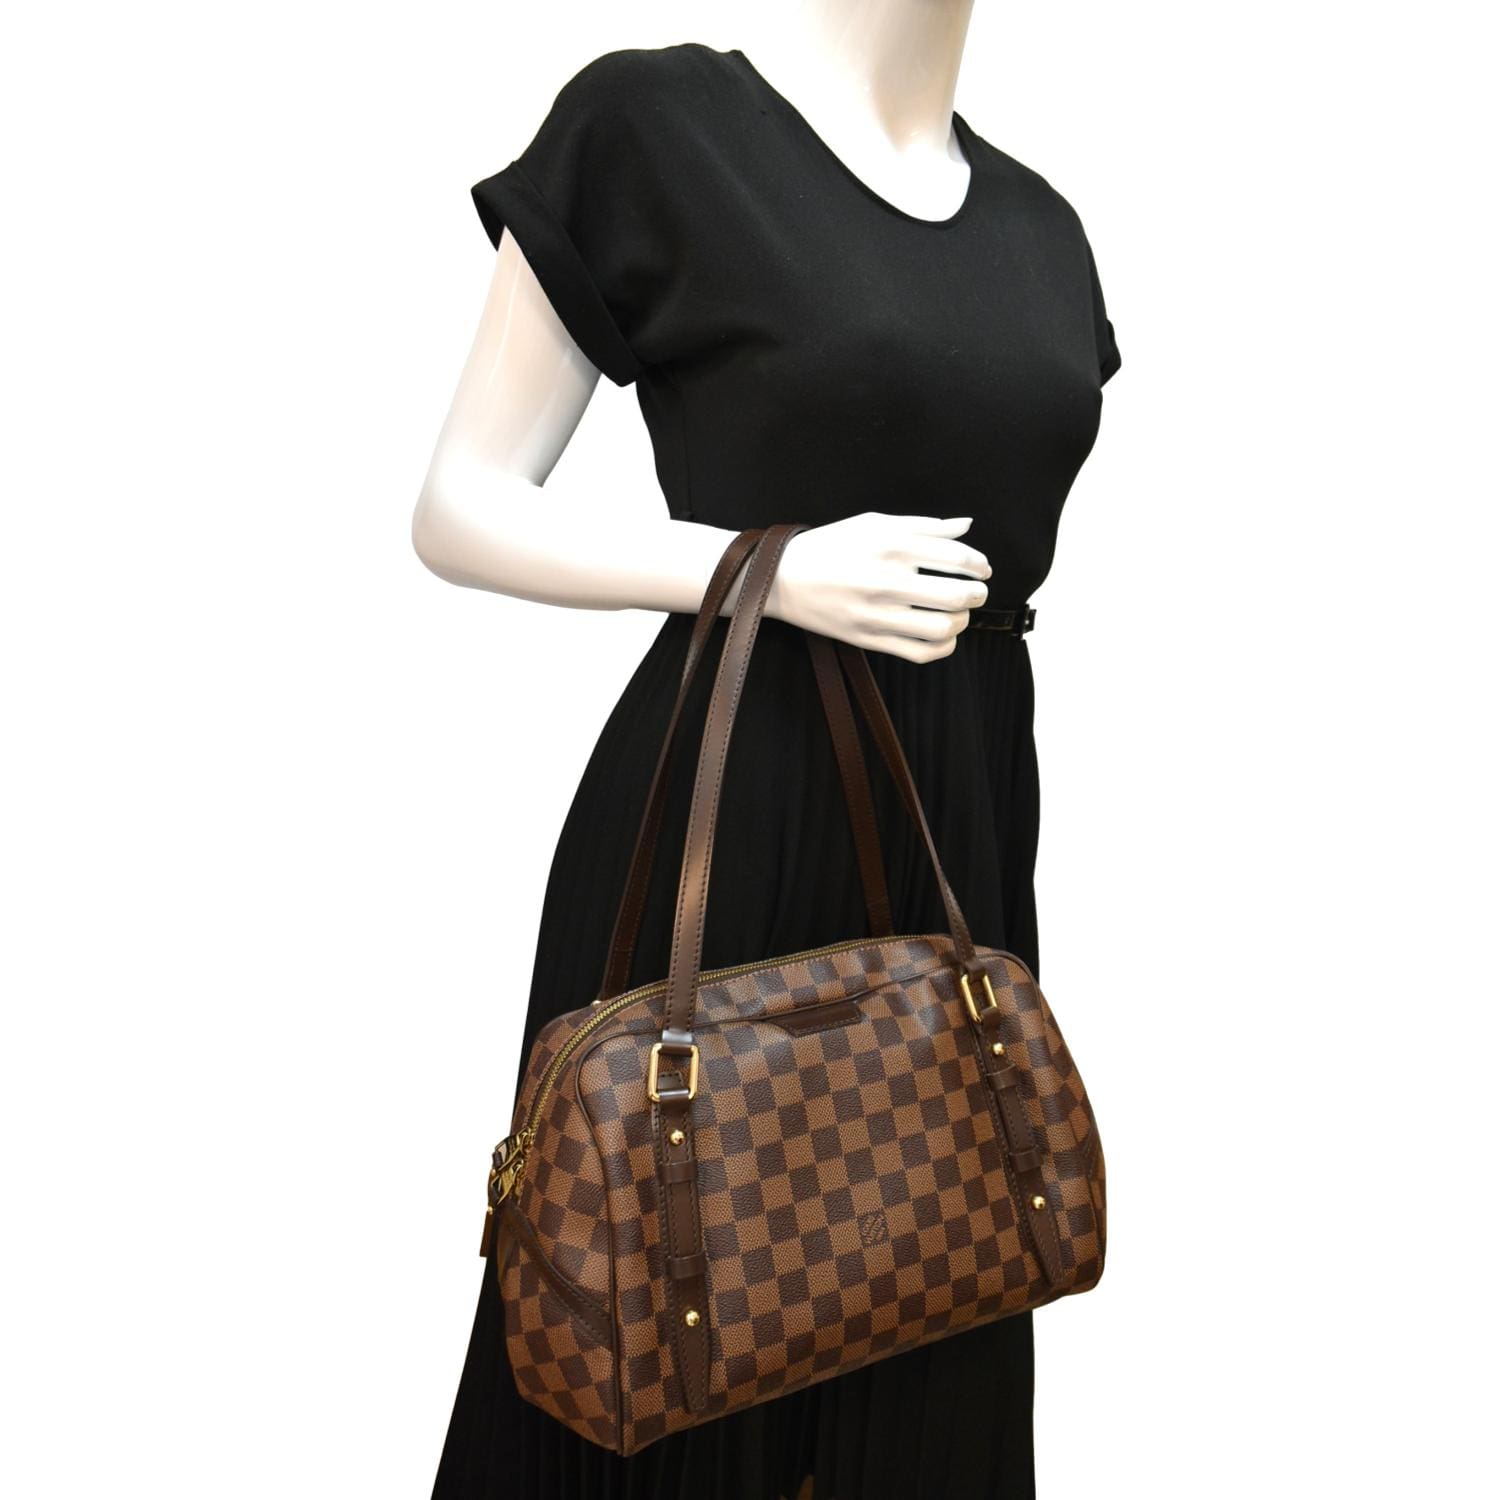 Louis Vuitton Rivington GM Damier Ebene Shoulder Bag | Mint Condition